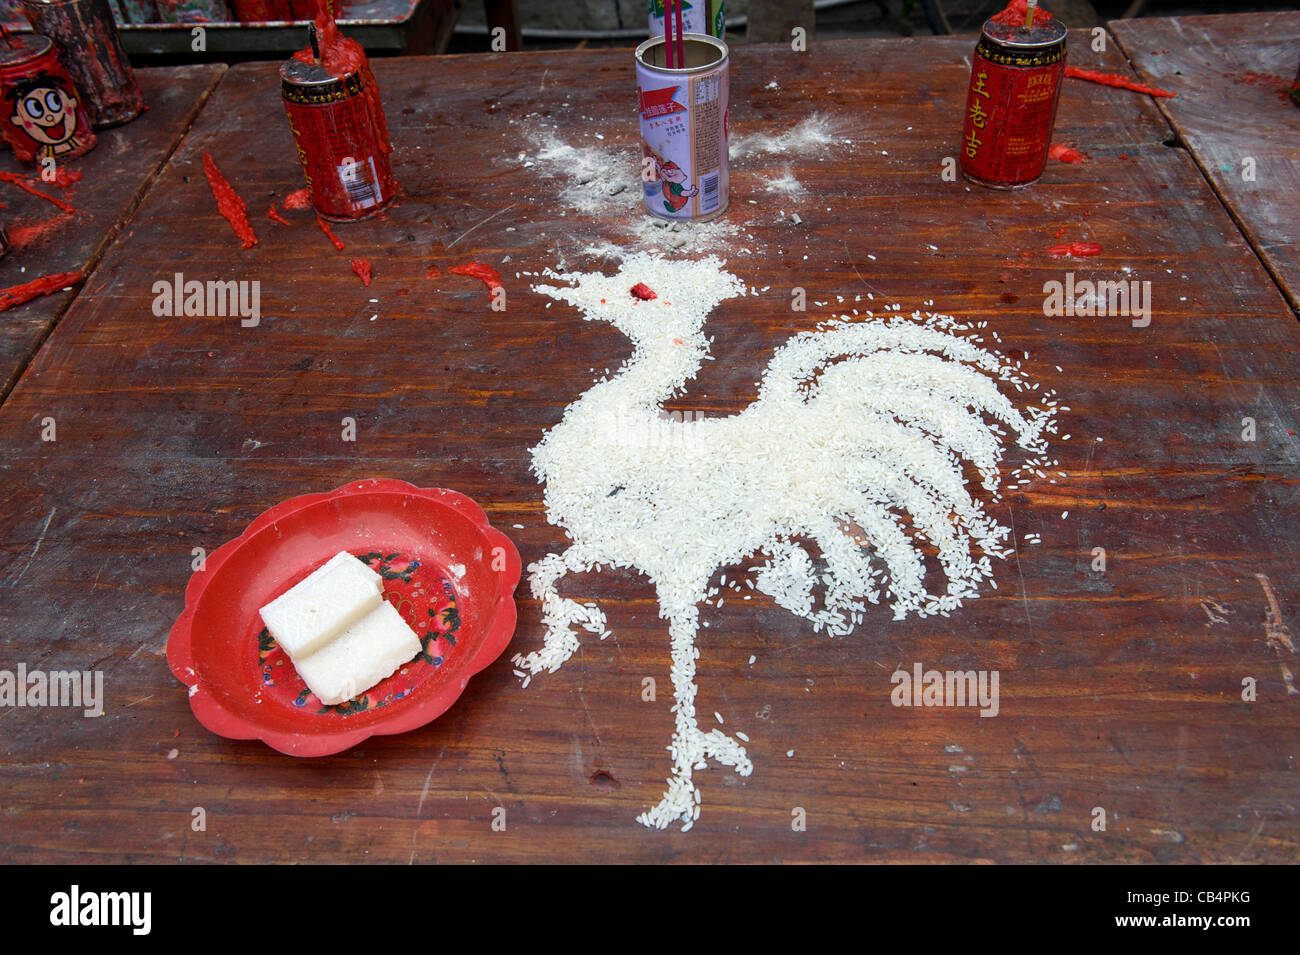 Coq - un animal symbolique de l'année de naissance - fait avec du riz à un temple Taoïste pendant Xiayuan Festival, en Chine. 2011 Banque D'Images